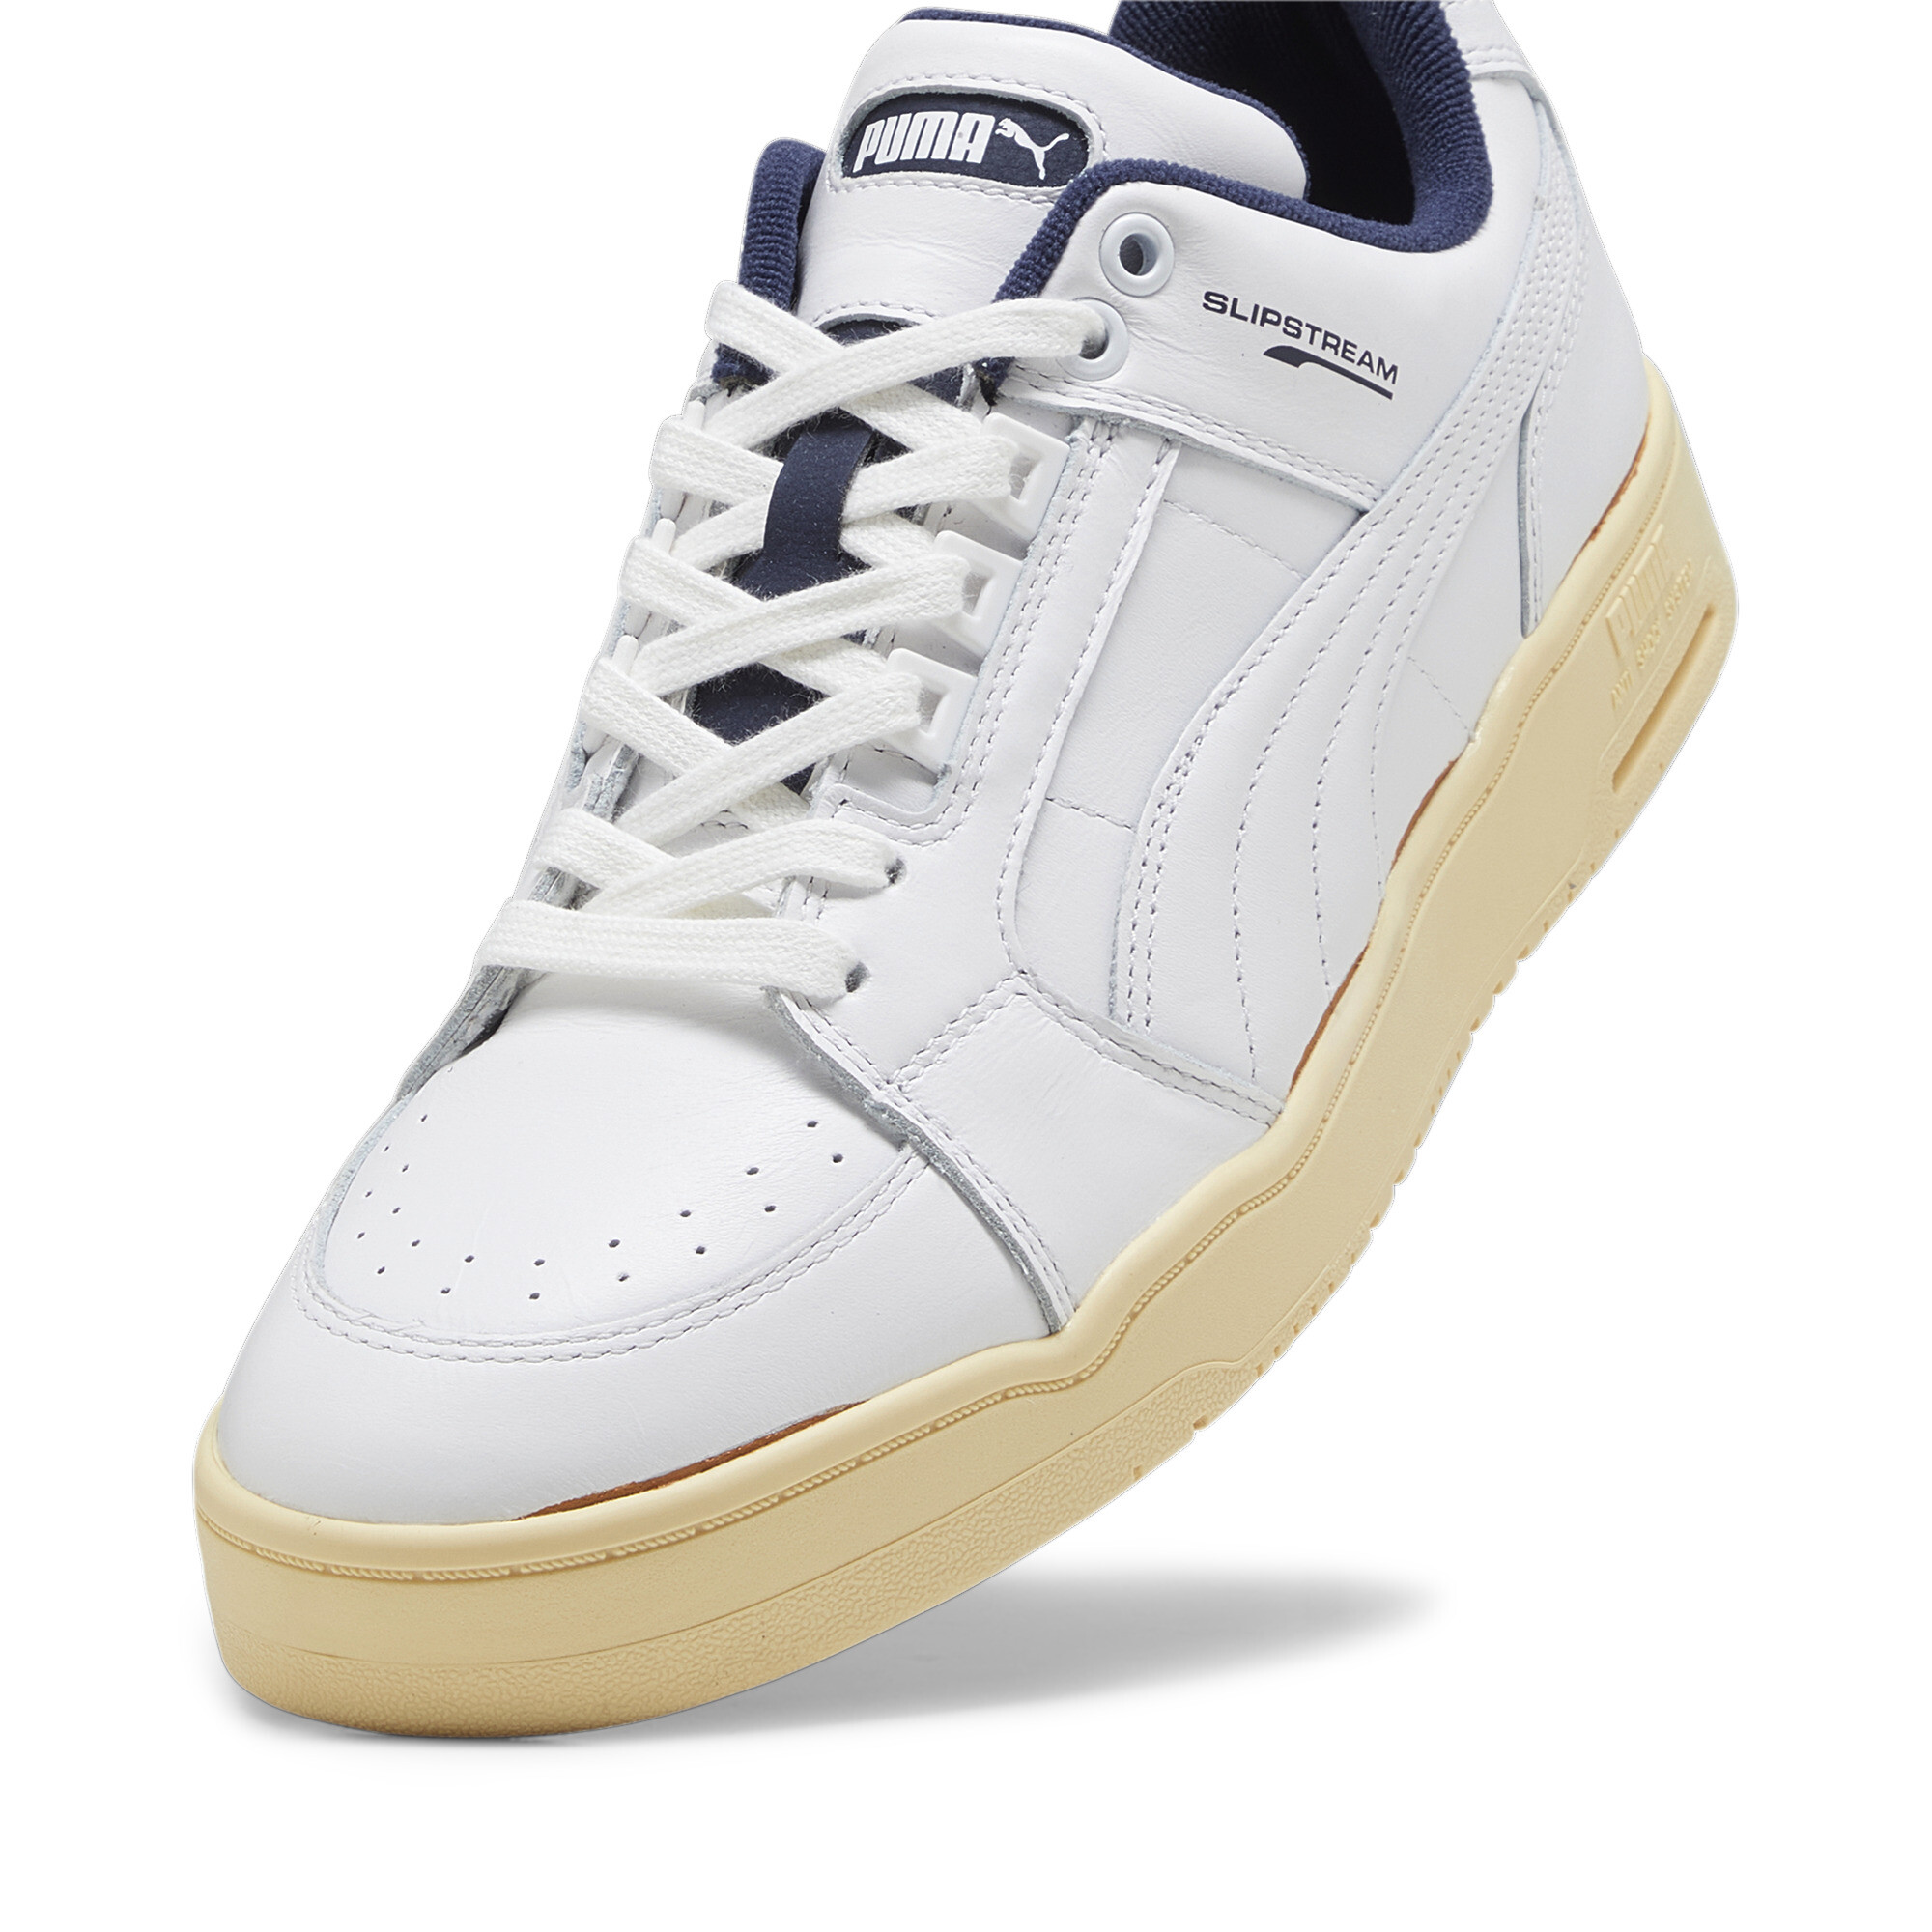 Men's PUMA Slipstream Lo The Never Worn II Sneakers In White, Size EU 44.5